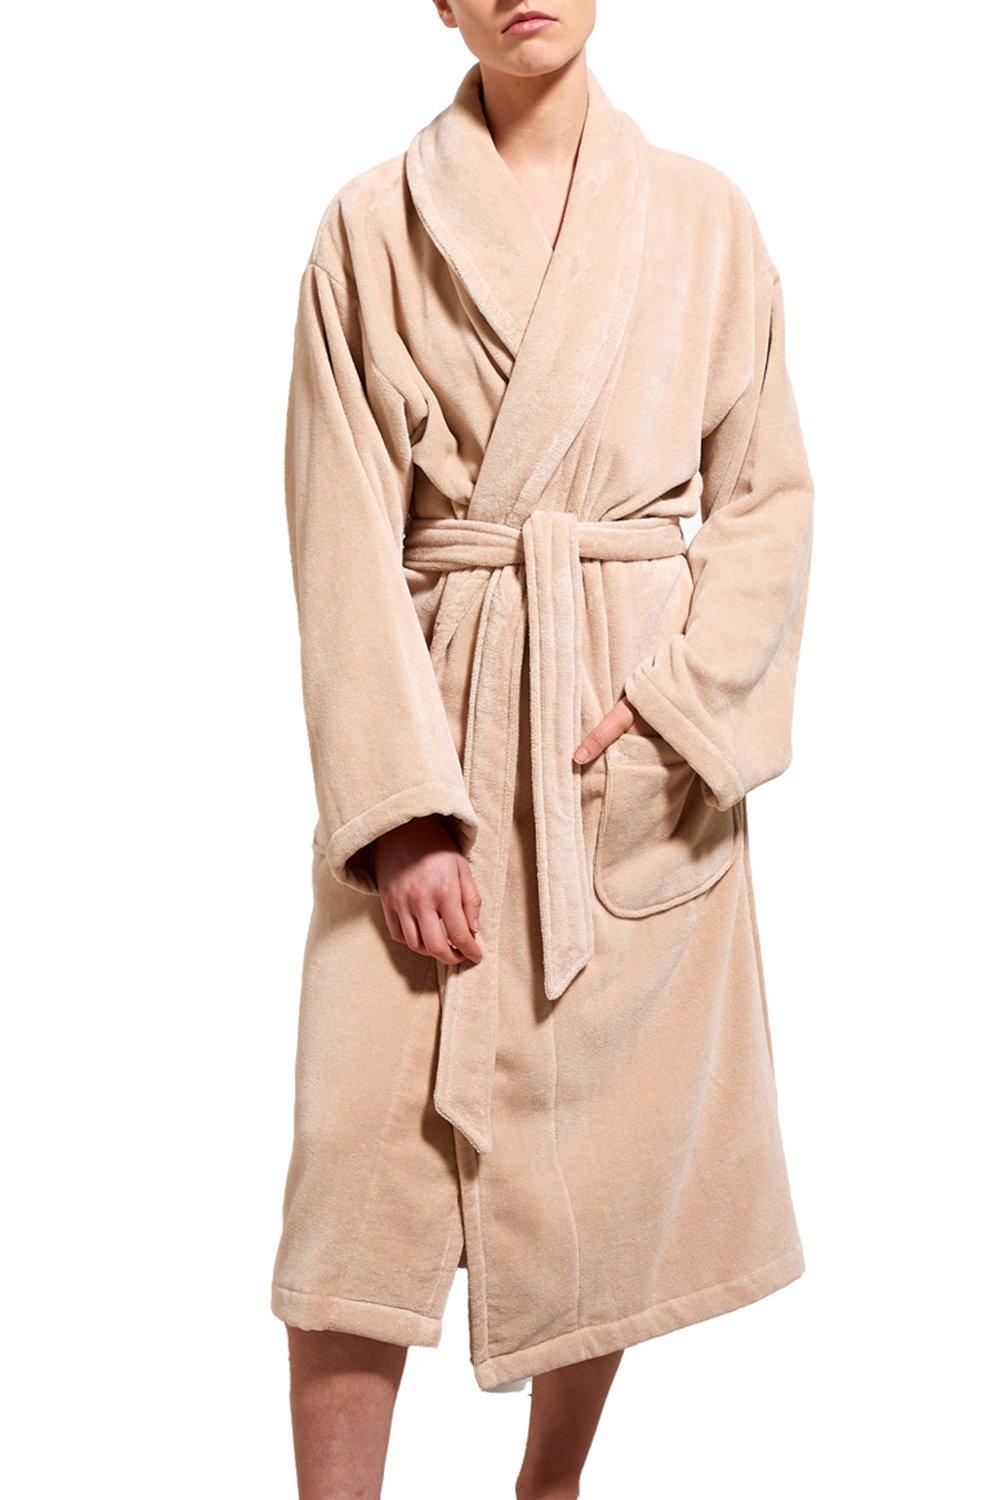 'Supreme Velour' 100% Sheared Cotton Robe